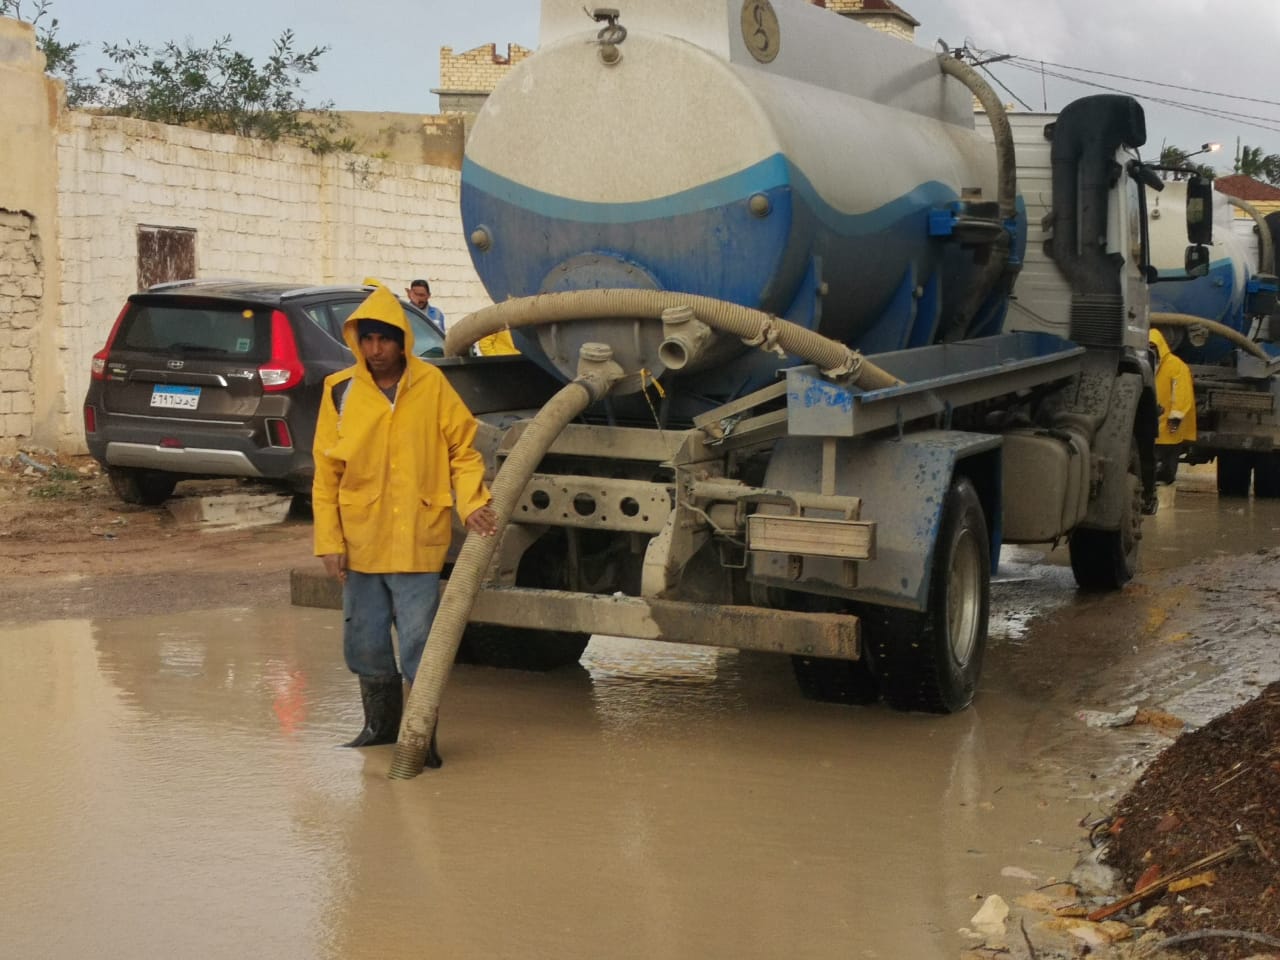   بدء السدة الشتوية ومراجعة منسوب مياه ترعة الحمام و22 سيارة تشارك فى سحب مياه الأمطار